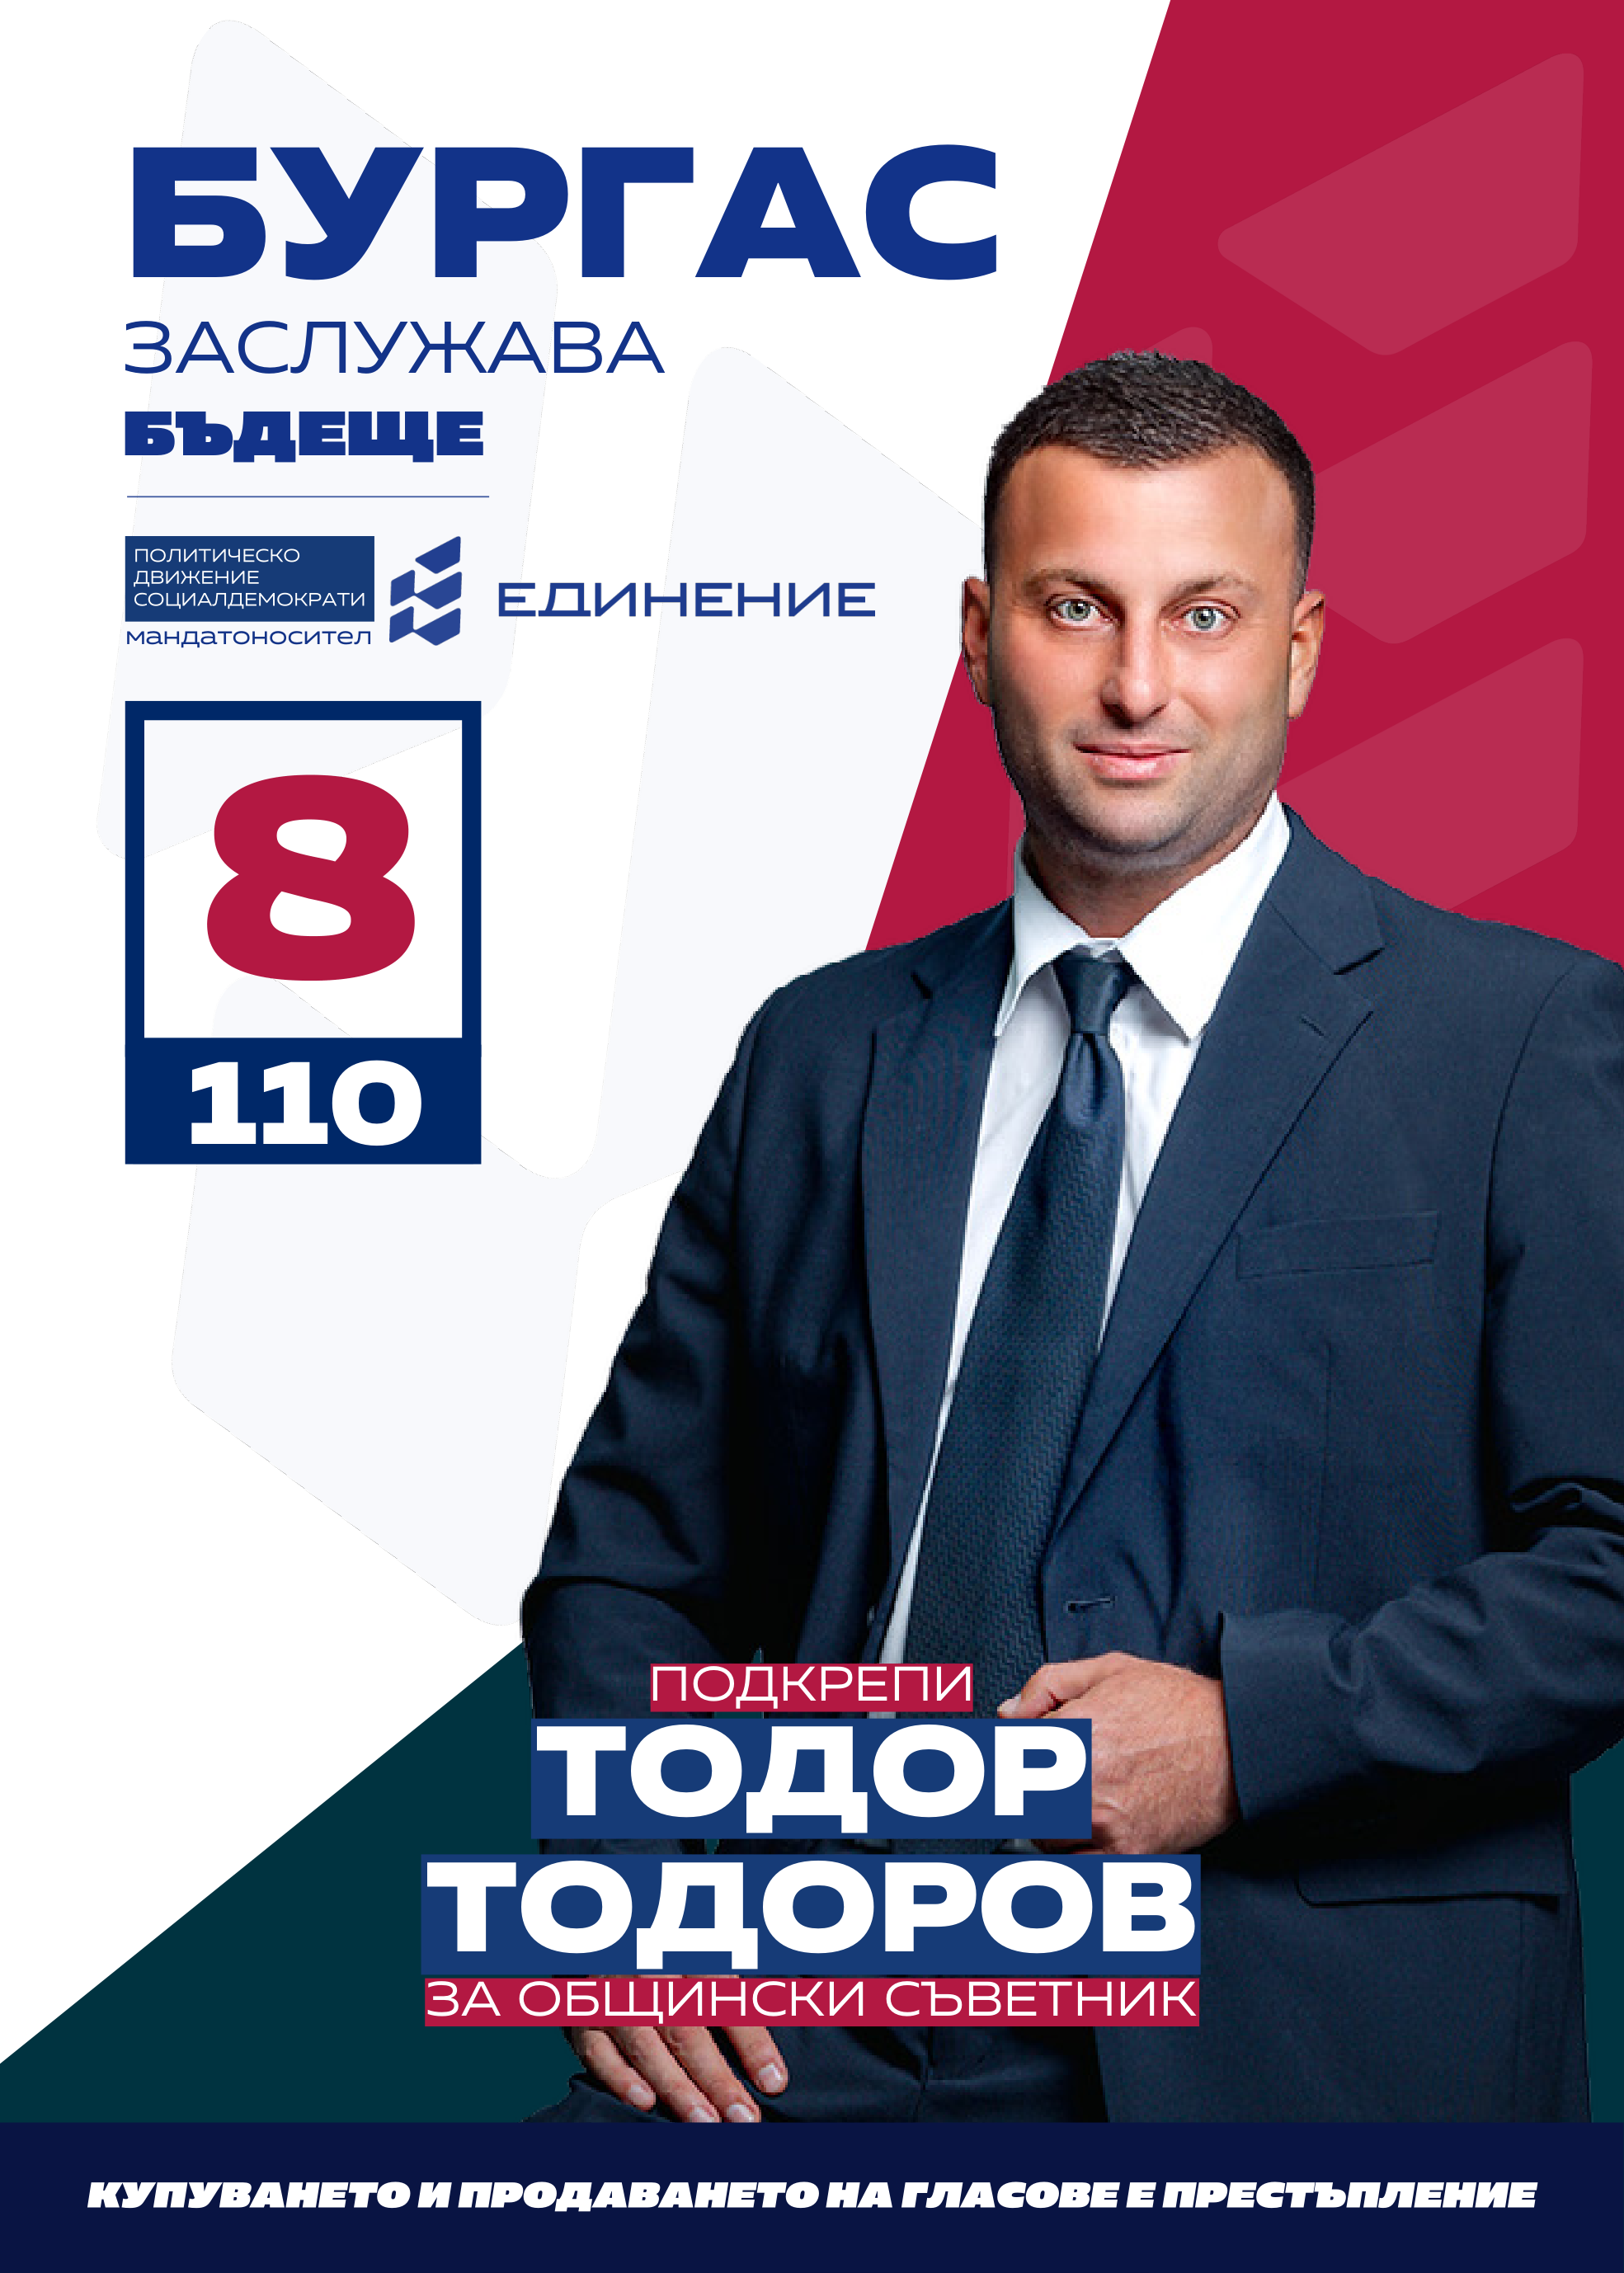 Тодор Тодоров – спортен педагог супервайзър
Тодор Тодоров е на 37